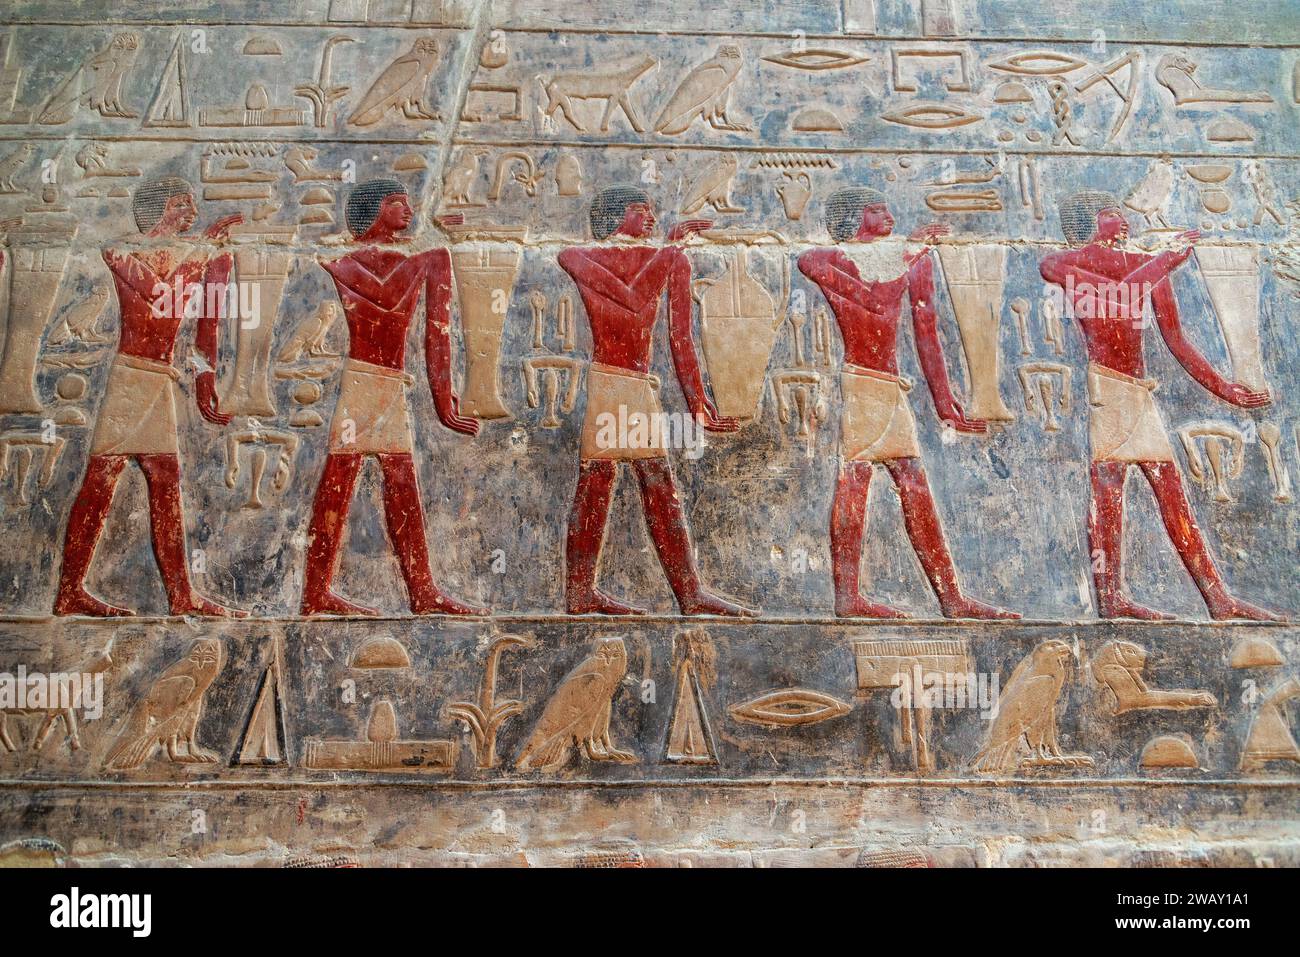 Wunderschöne Kunstwerke in einem Grab in Sakkara, Ägypten, mit der Originalfarbe noch sichtbar Stockfoto